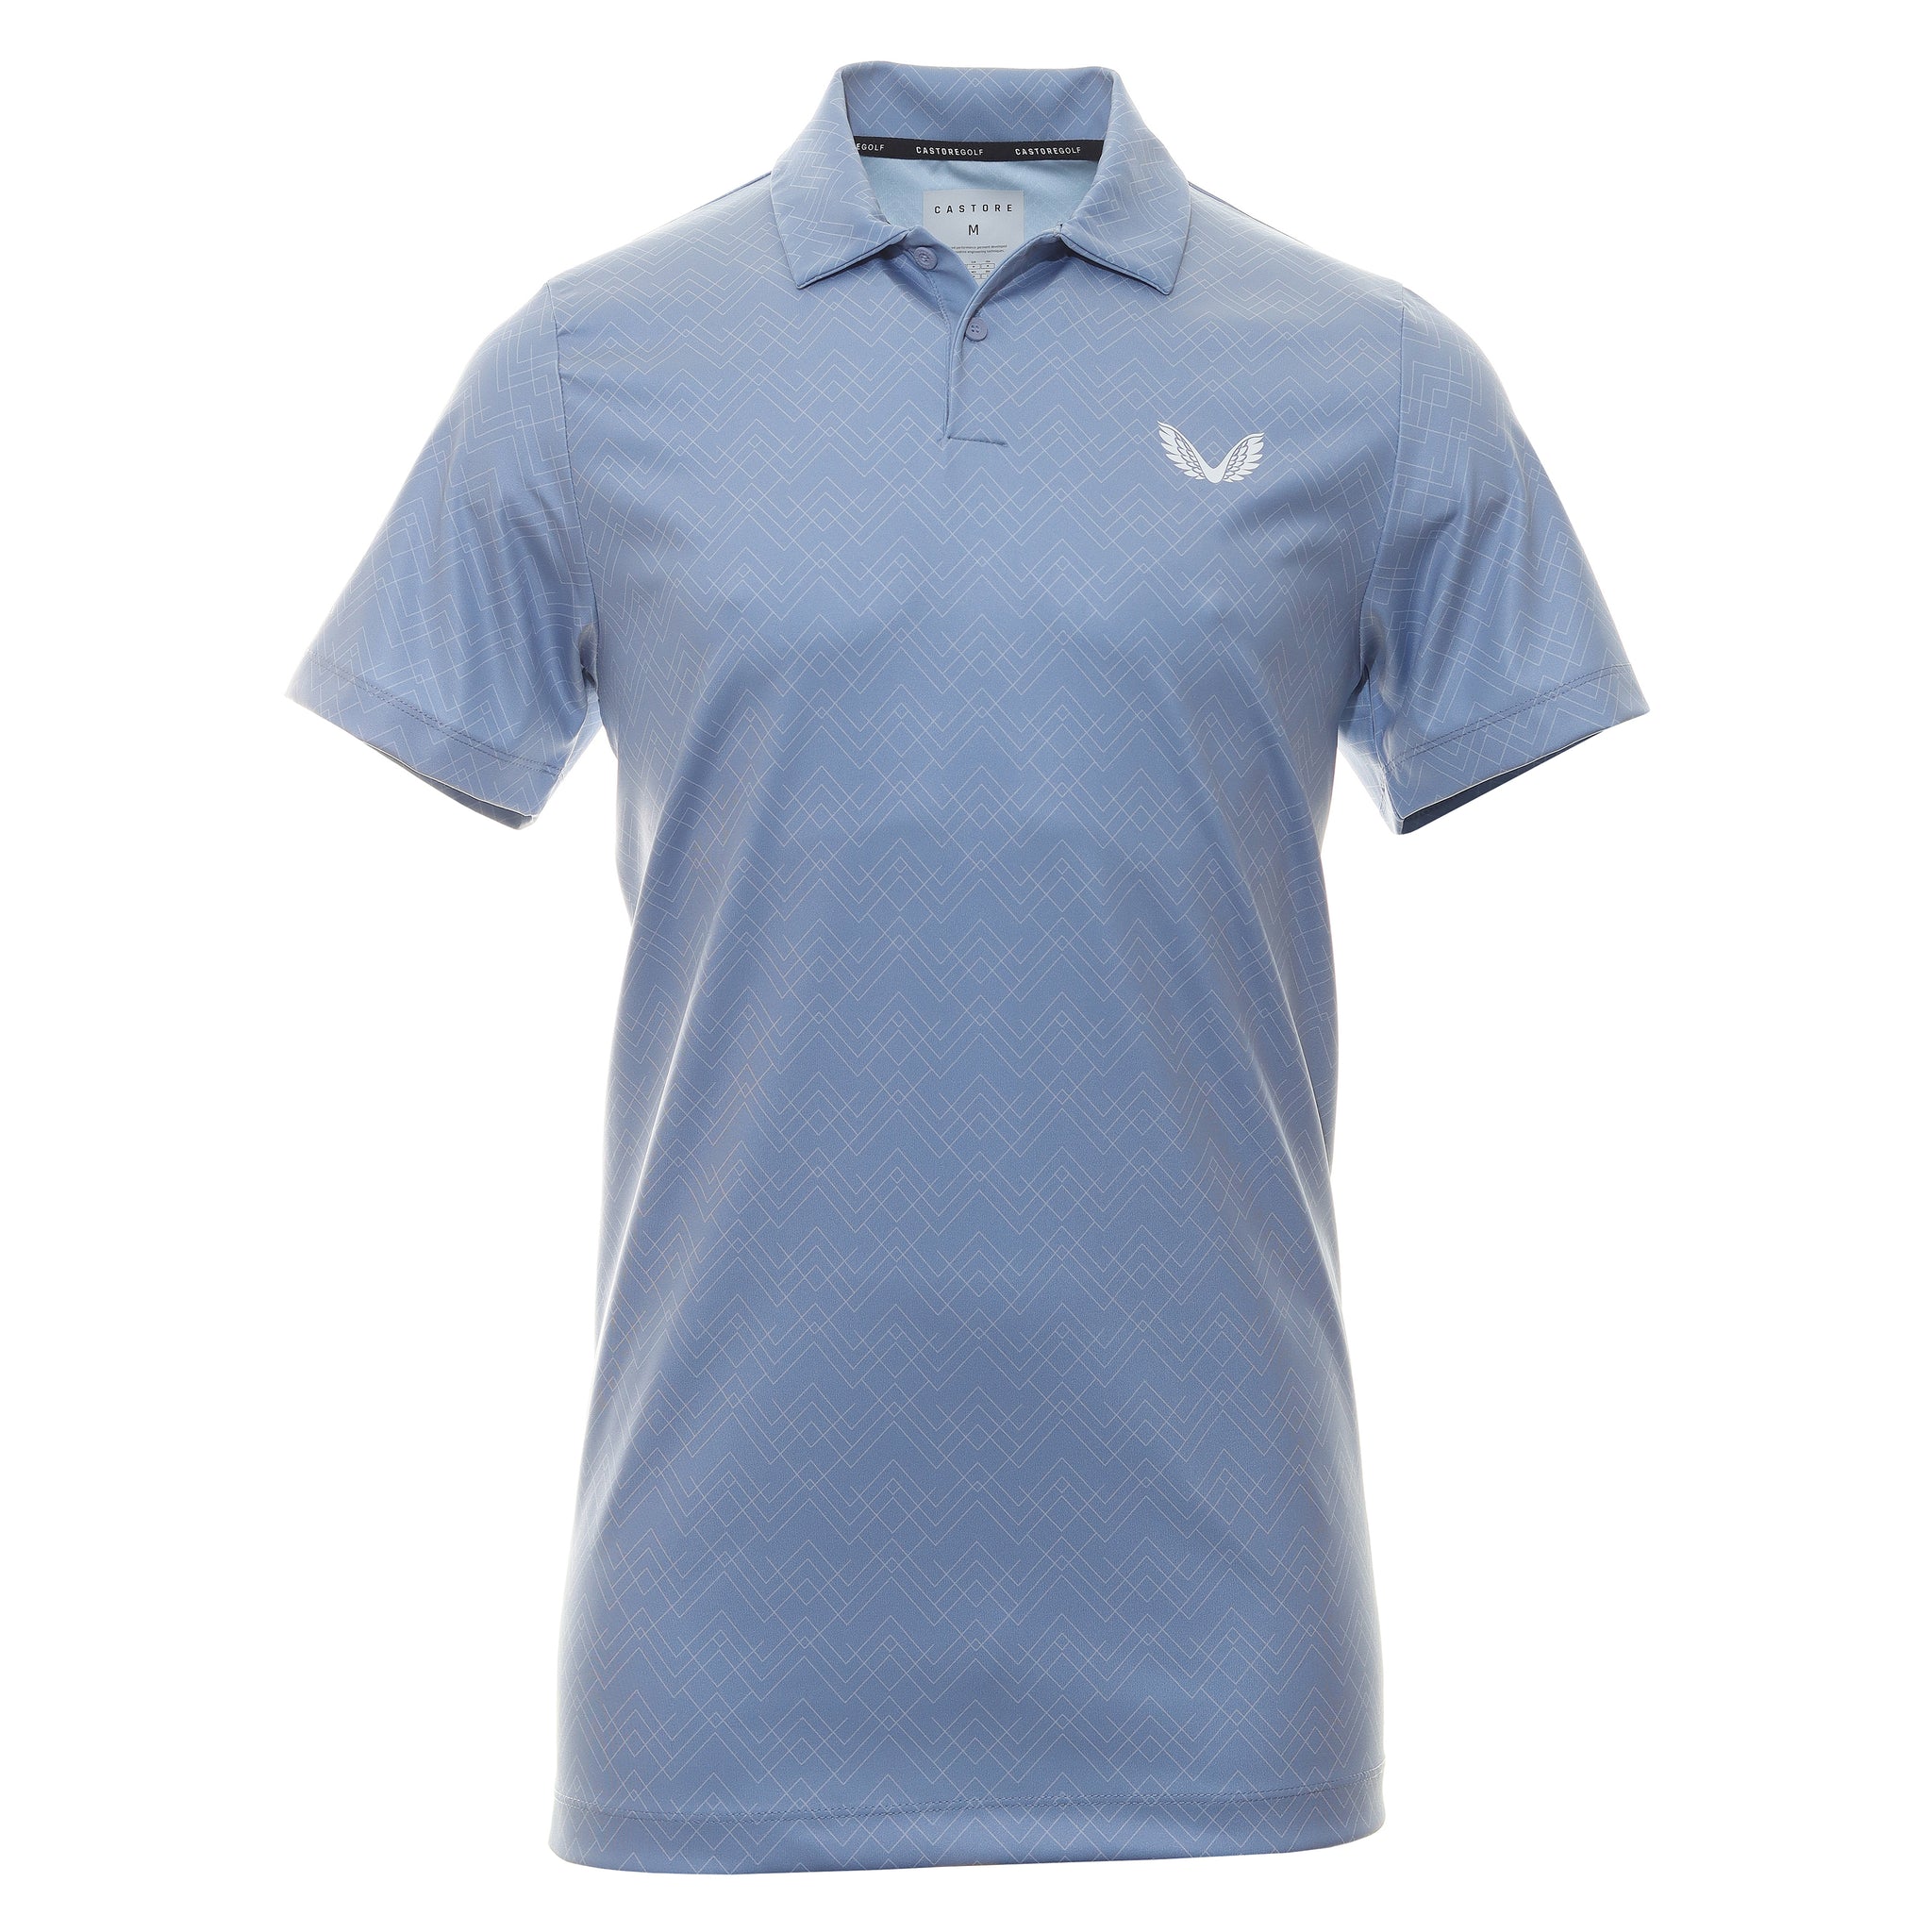 castore-printed-golf-polo-shirt-cma30366-sky